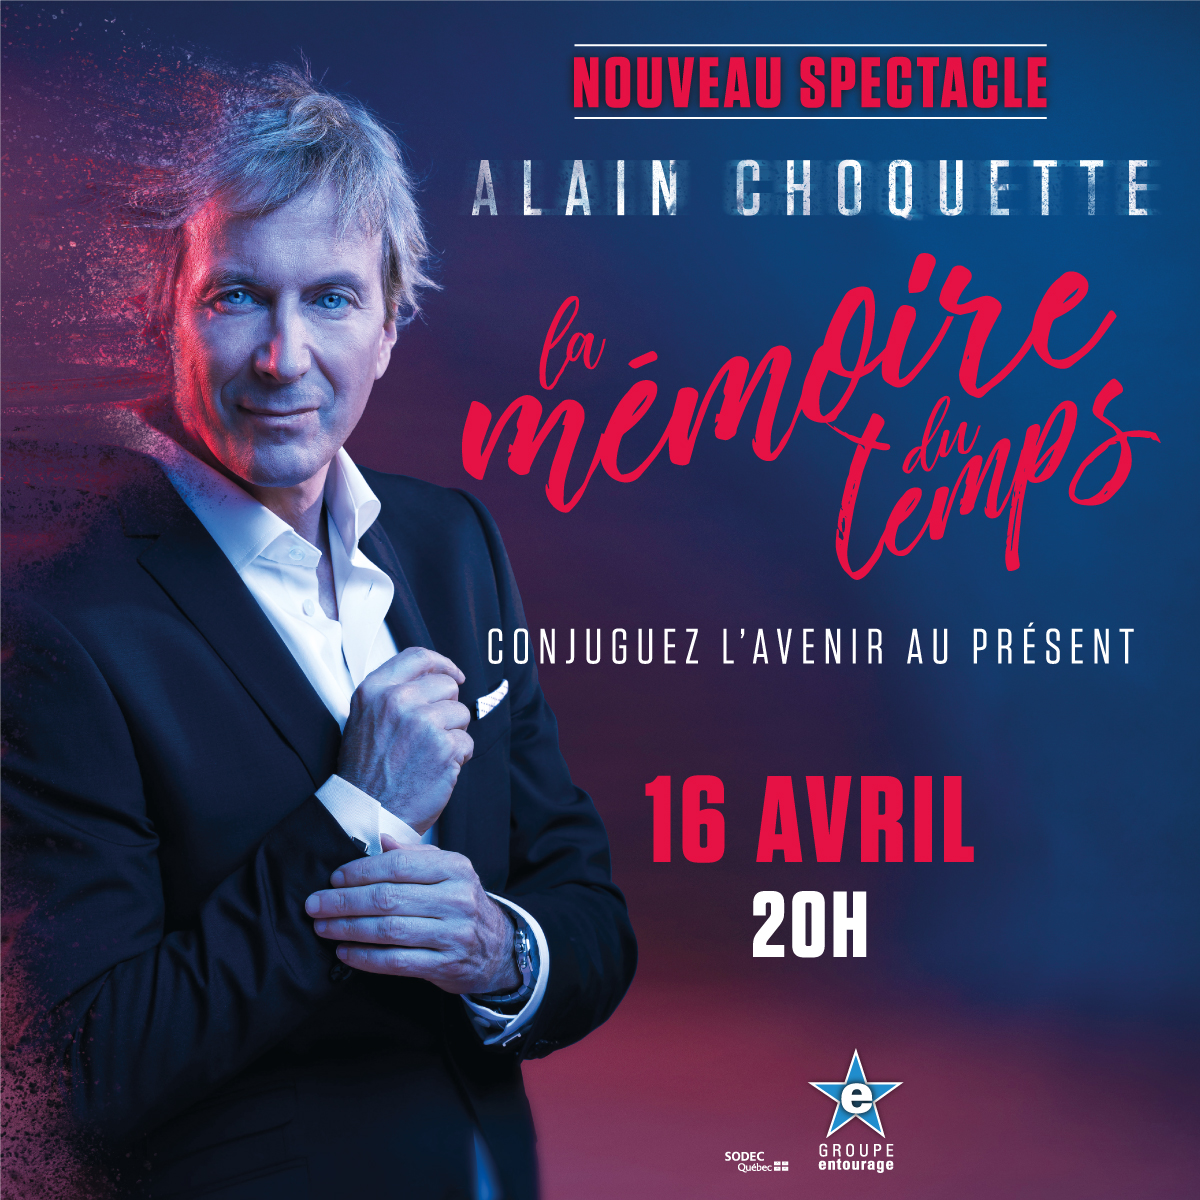 Alain Choquette